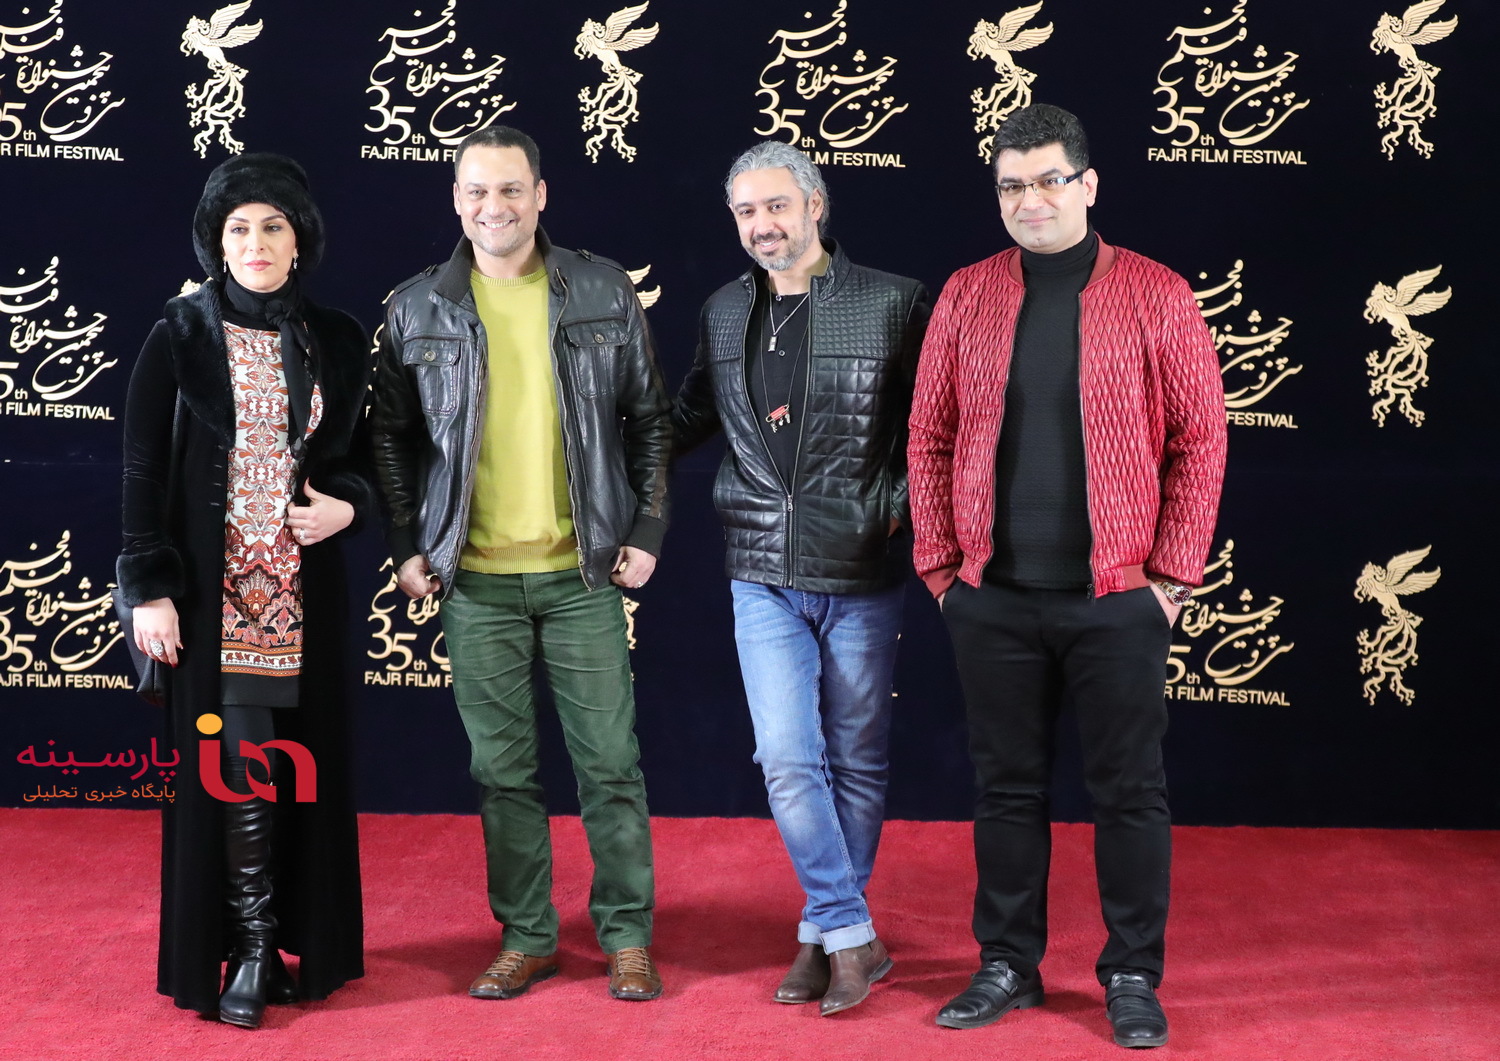 تن و حواشی فیلم های روز دهم کاخ جشنواره در قاب تصویر